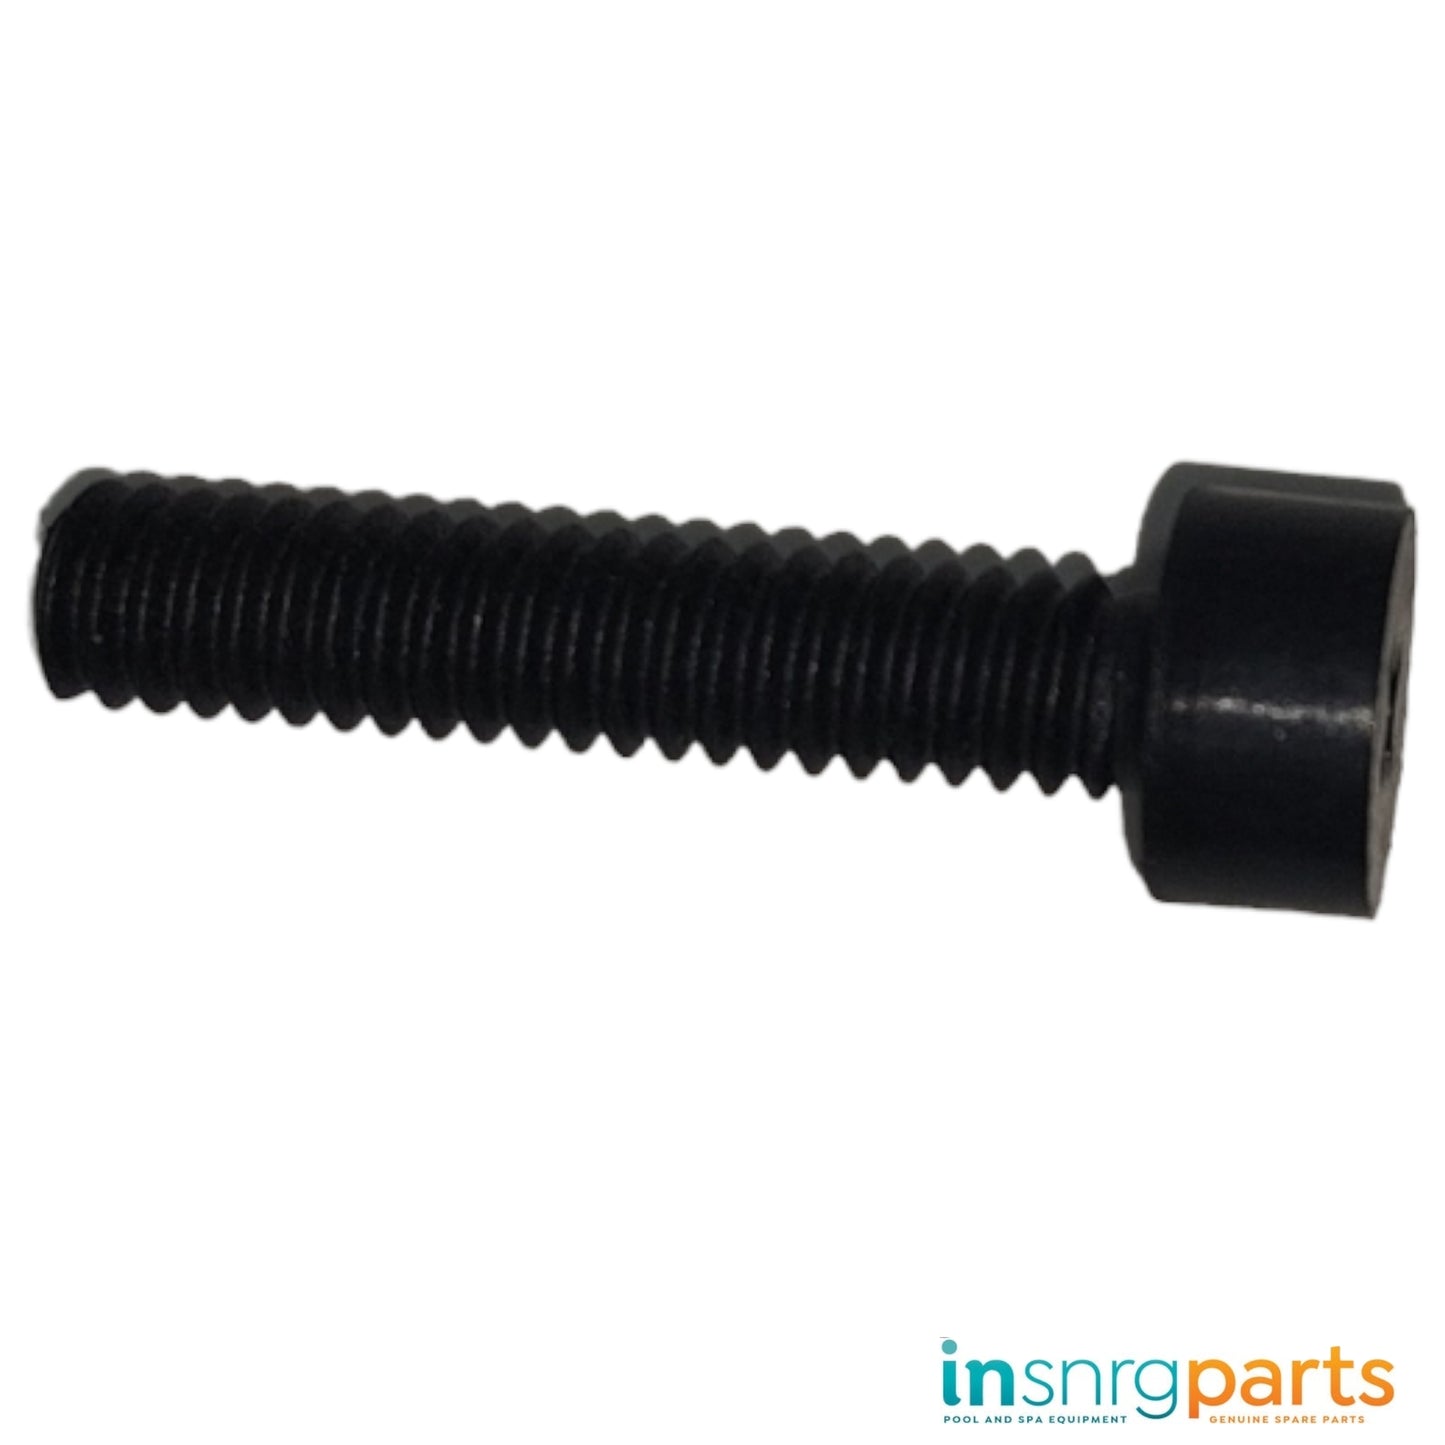 Impeller Screw (Nylon) - LEFT Hand Thread - Insnrg Pumps [241014050]